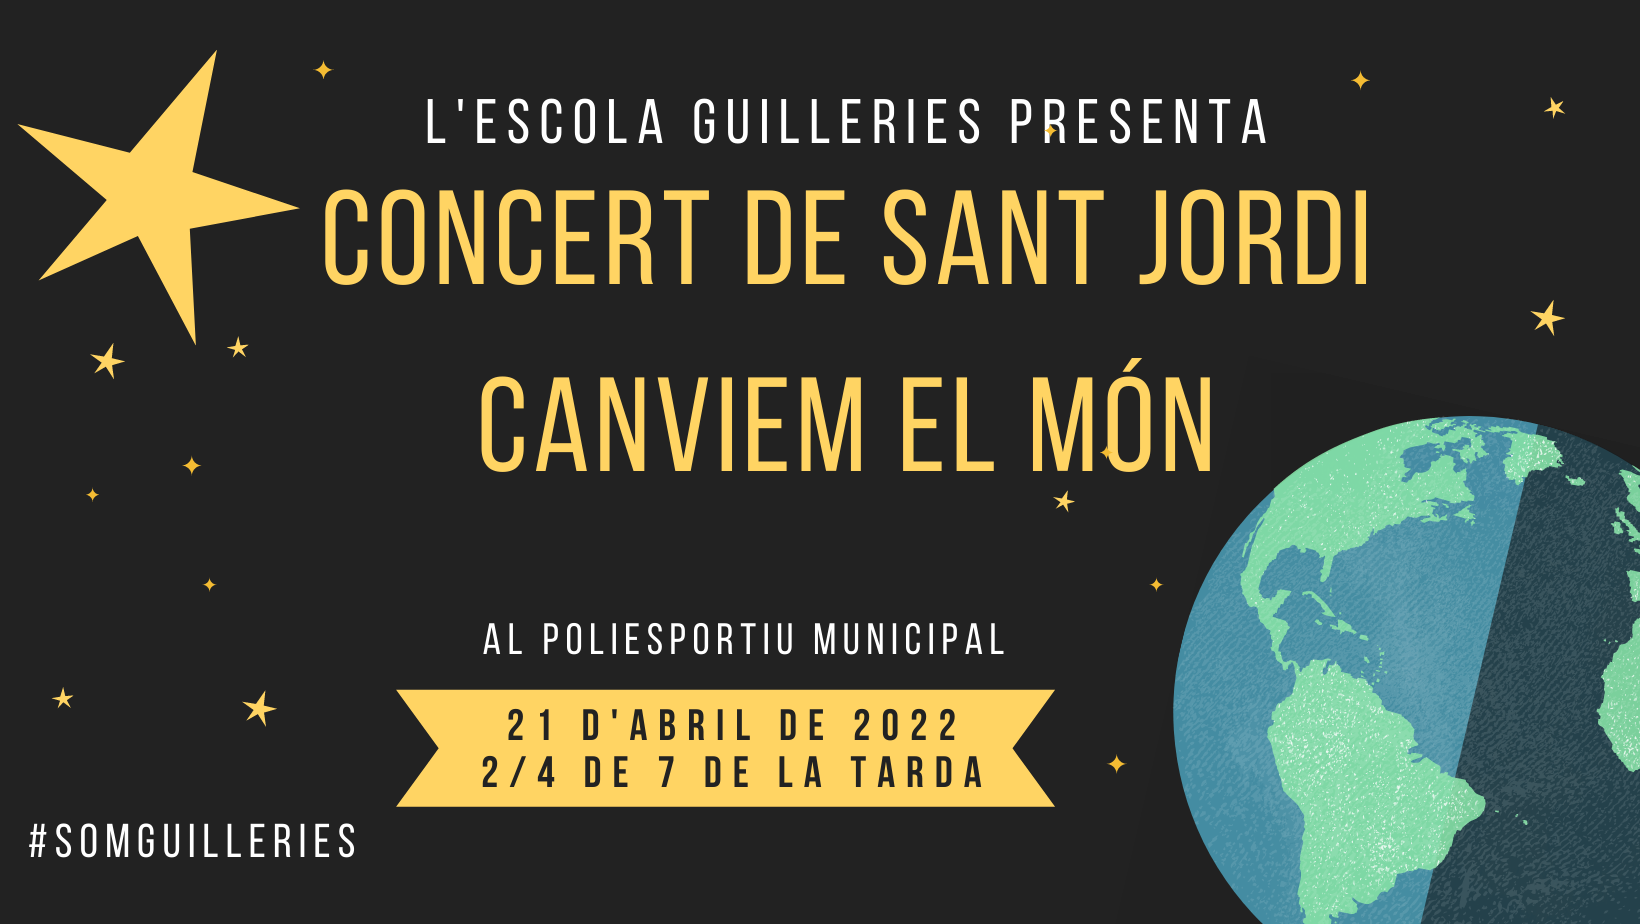 Concert de Sant Jordi “CANVIEM EL MÓN”